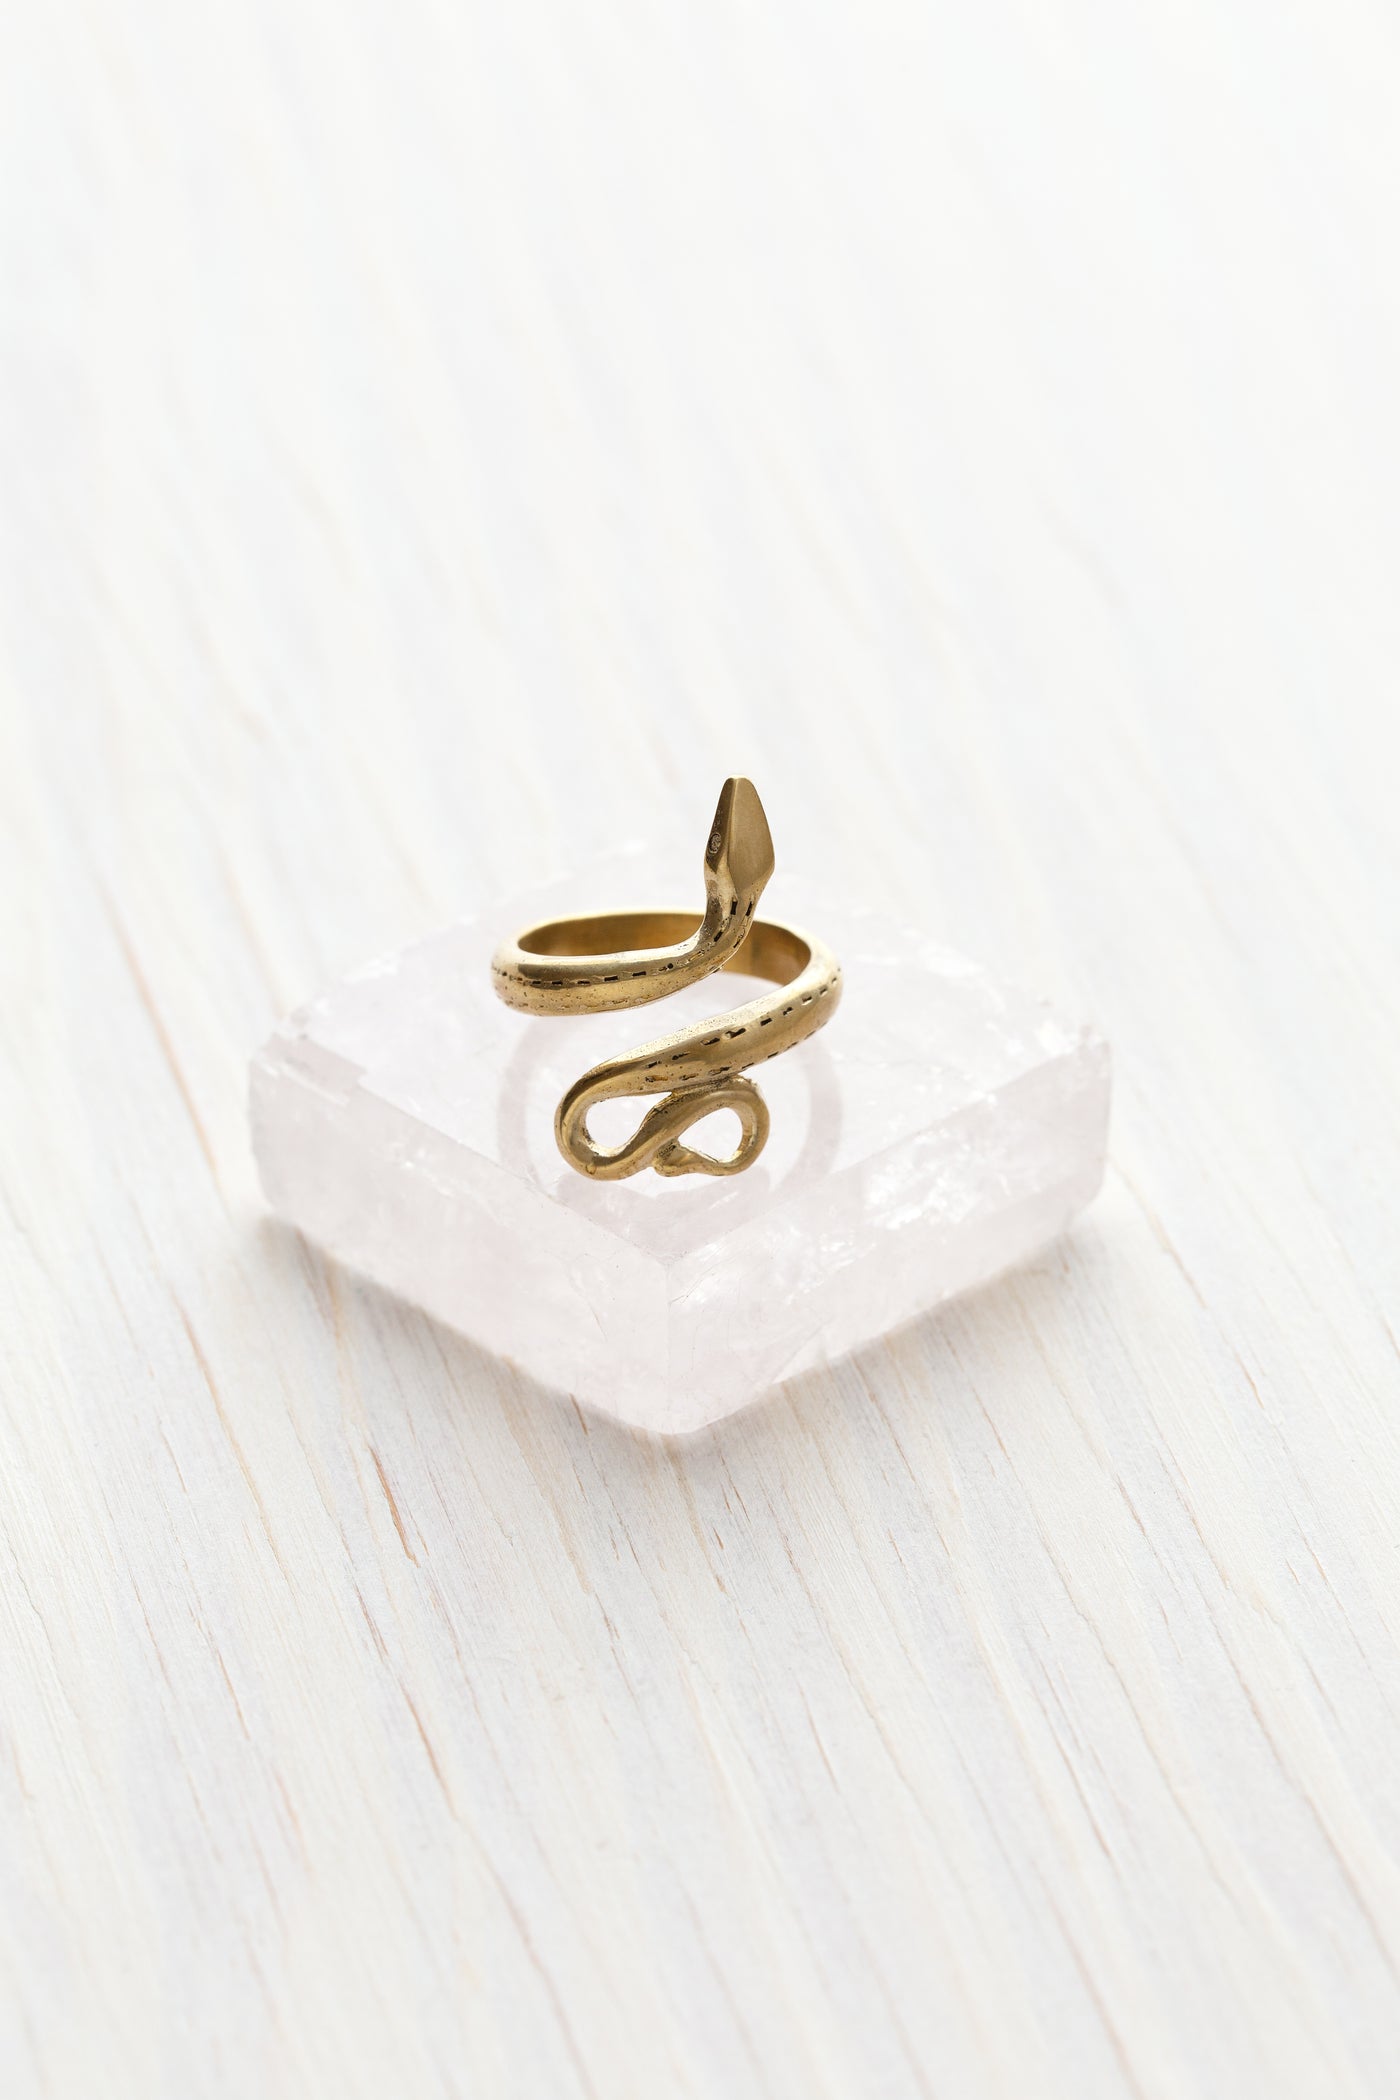 Golden serpent ring